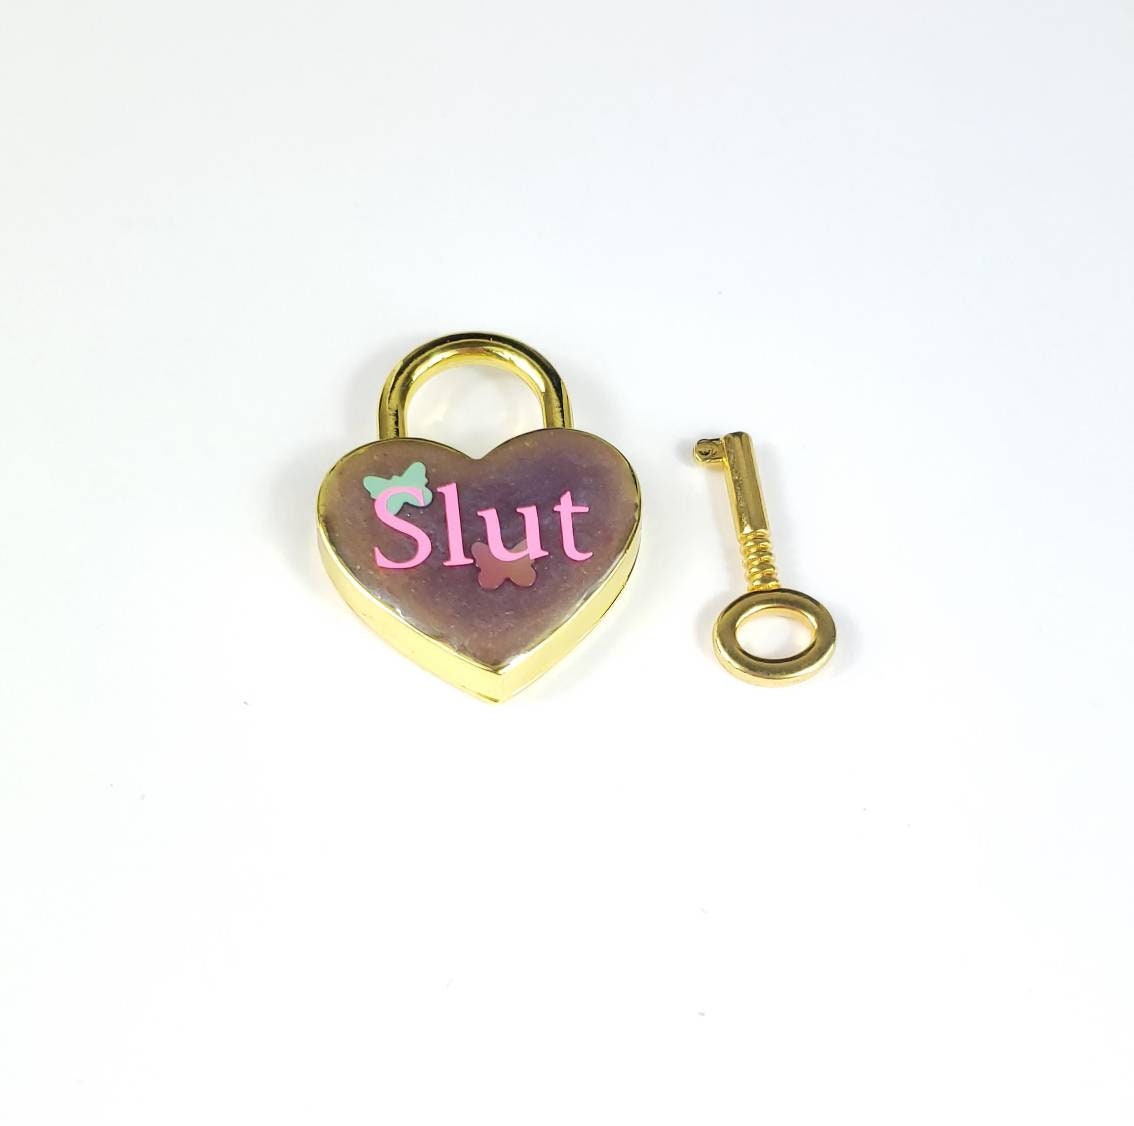 Slut Heart Pad Lock, Resin Aluminum Heart Lock, Gold Collar Closure Lock, DDLG Lock, Mature BDSM Lock